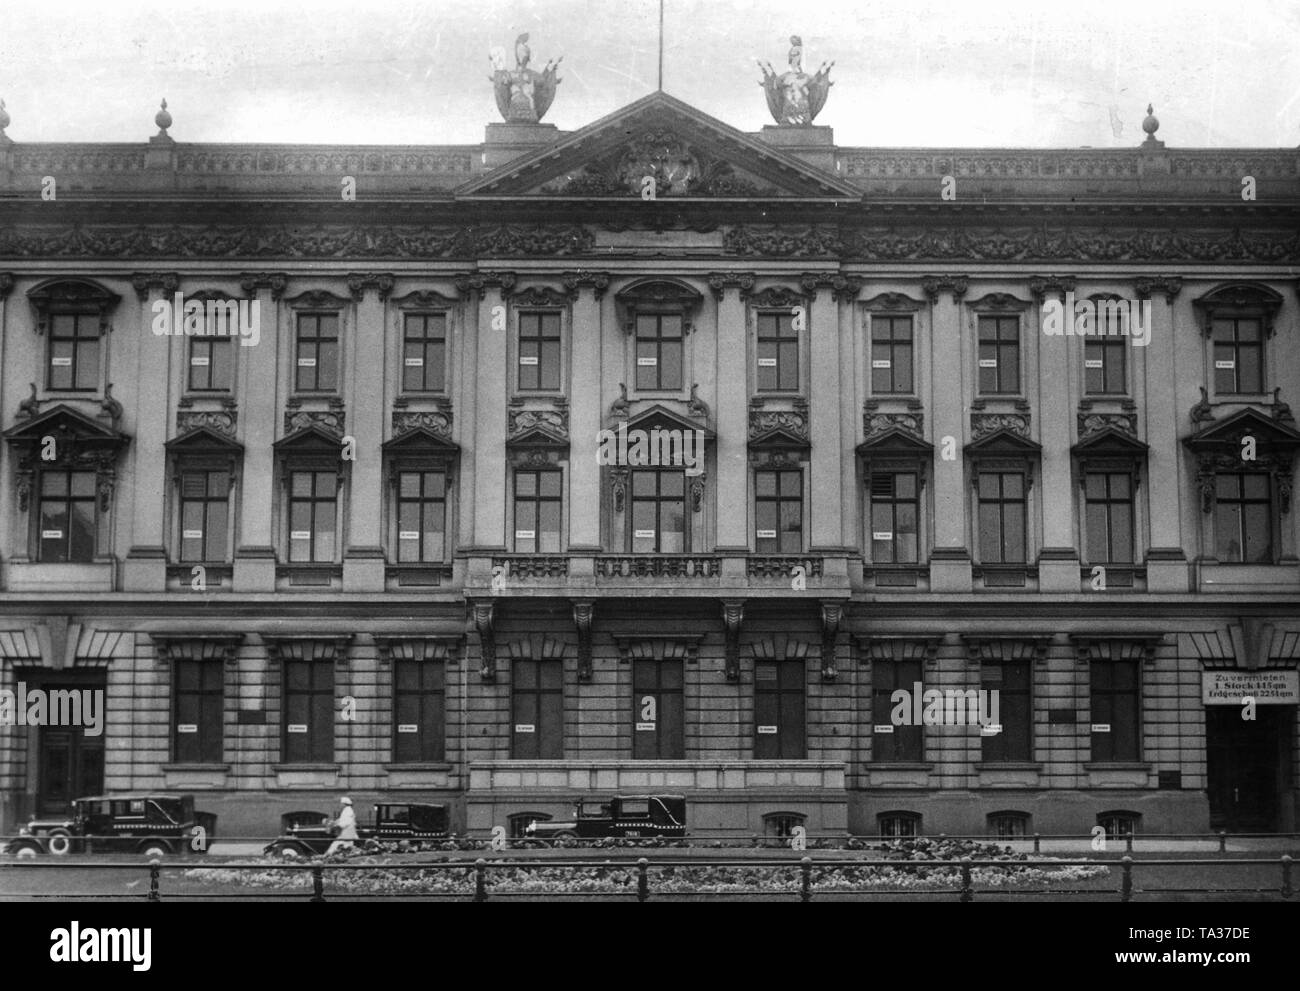 Le Palais am Pariser Platz est vide et est couverte avec de nombreux locataires voulaient autocollants. C'est une image typique de la période, de nombreux palais et édifices à bureaux sont vides. Banque D'Images